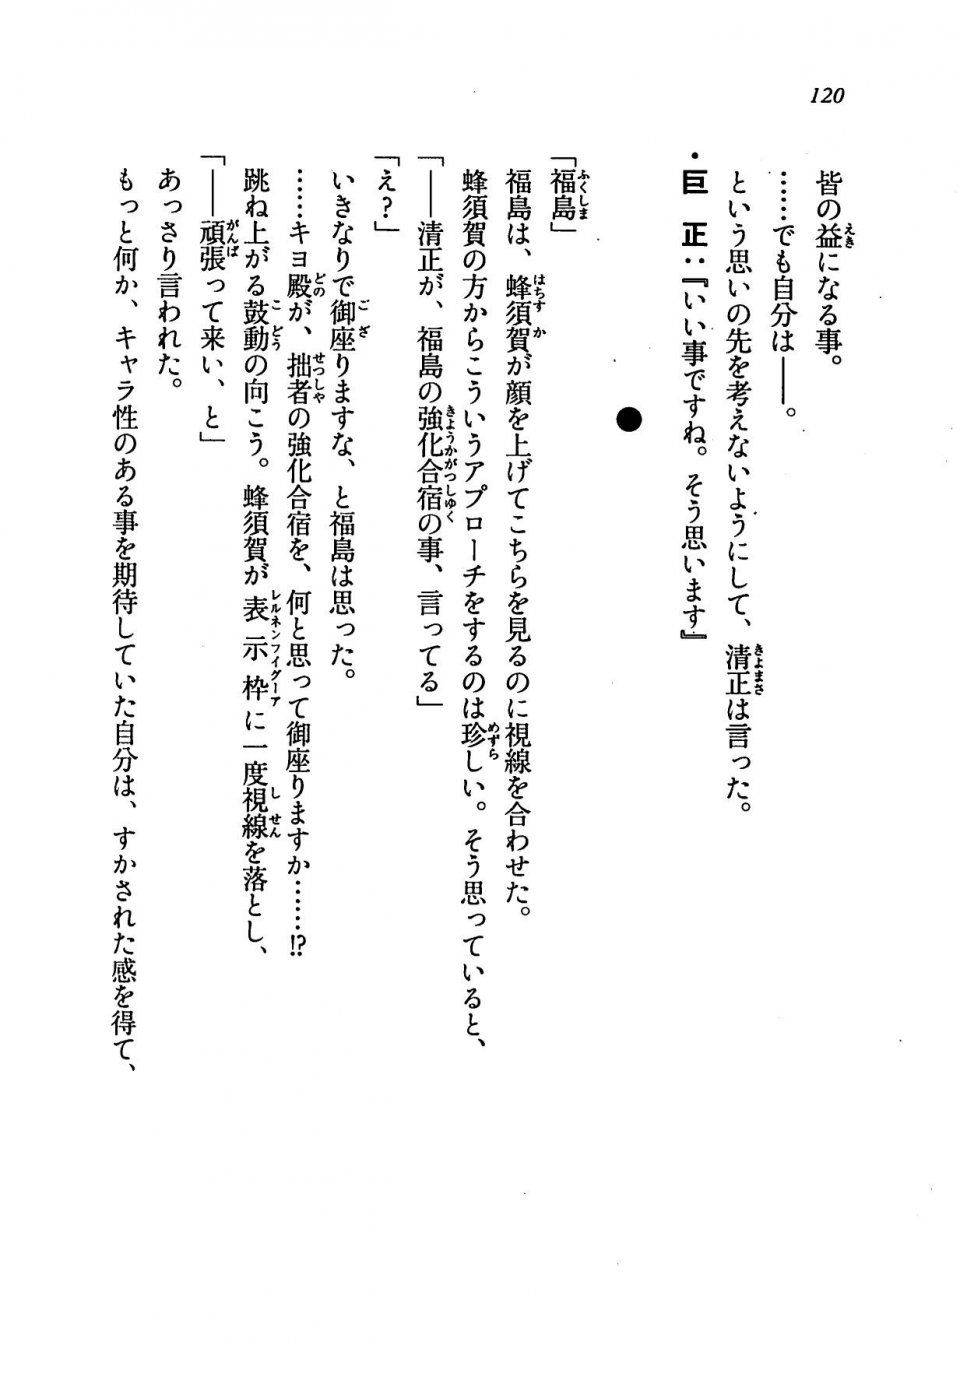 Kyoukai Senjou no Horizon LN Vol 19(8A) - Photo #120